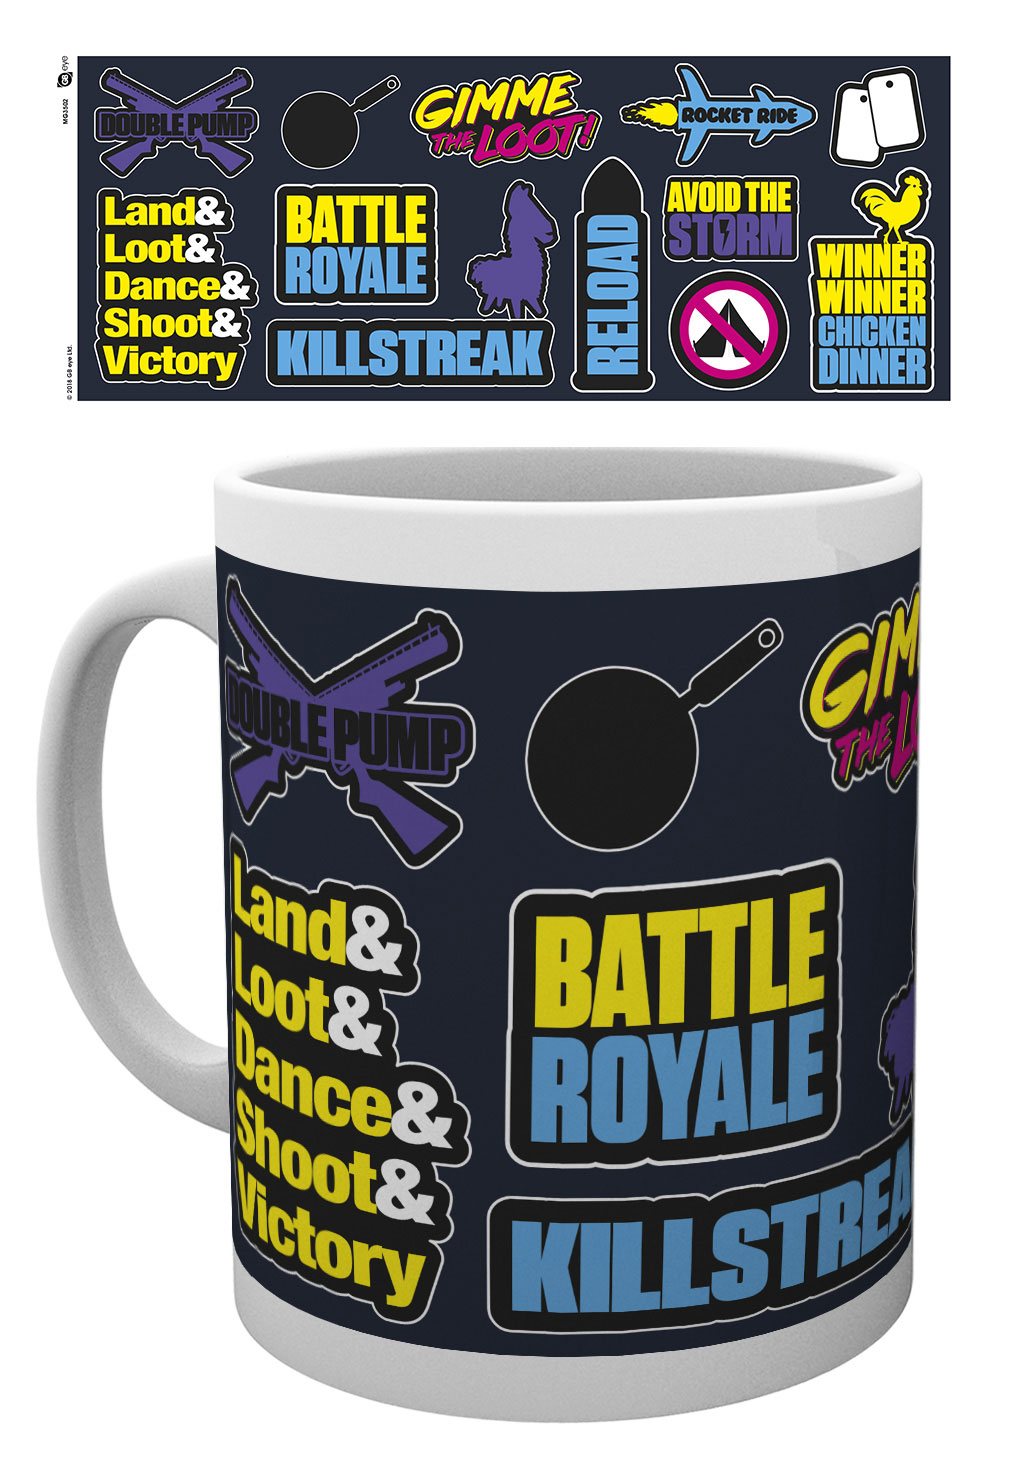 Battle Royale mug Infographic